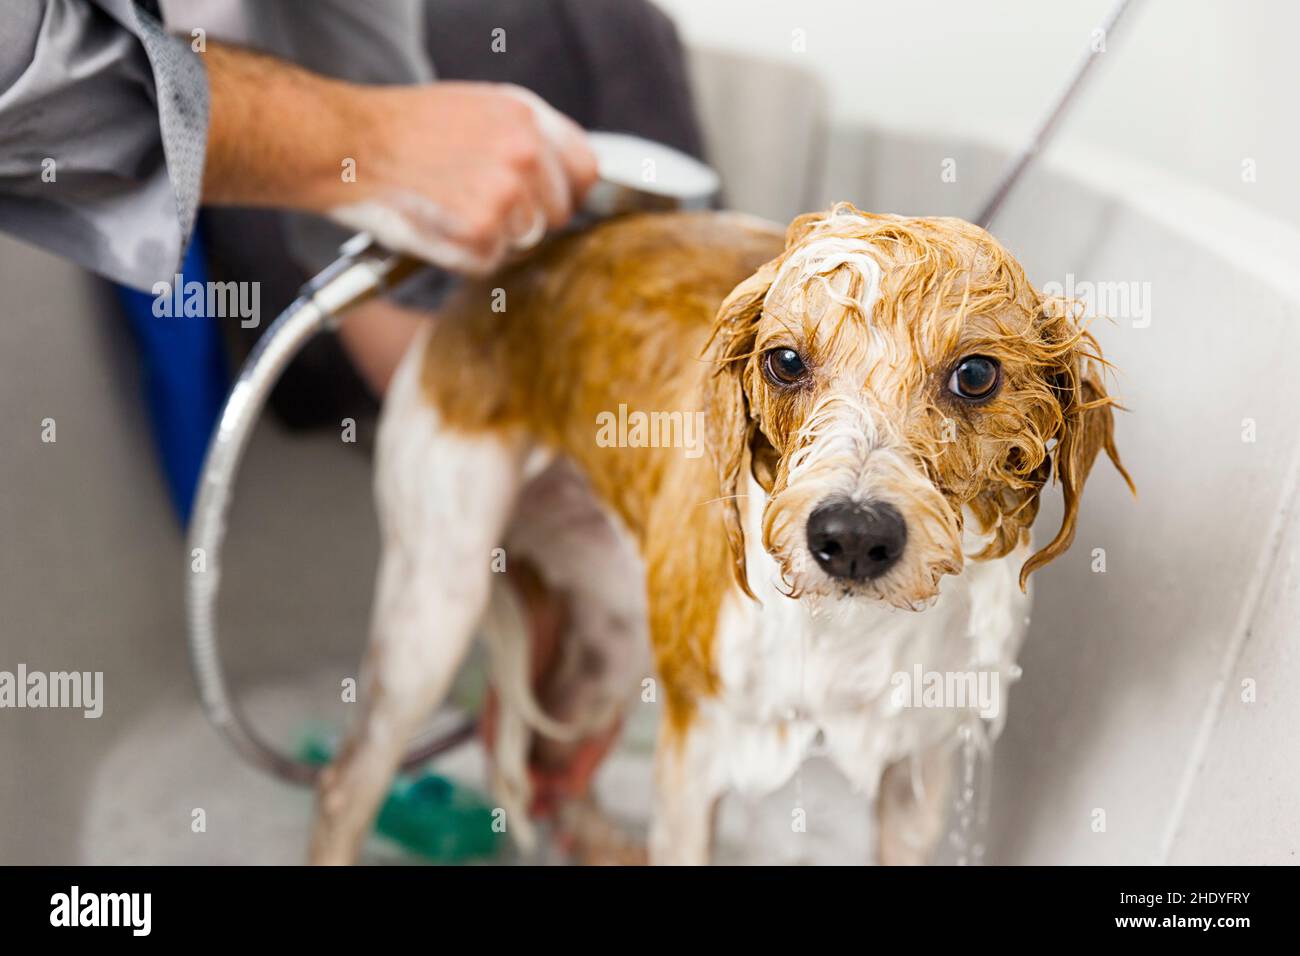 Hund, Sauberkeit, Dusche, Hunde, Duschen Stockfotografie - Alamy